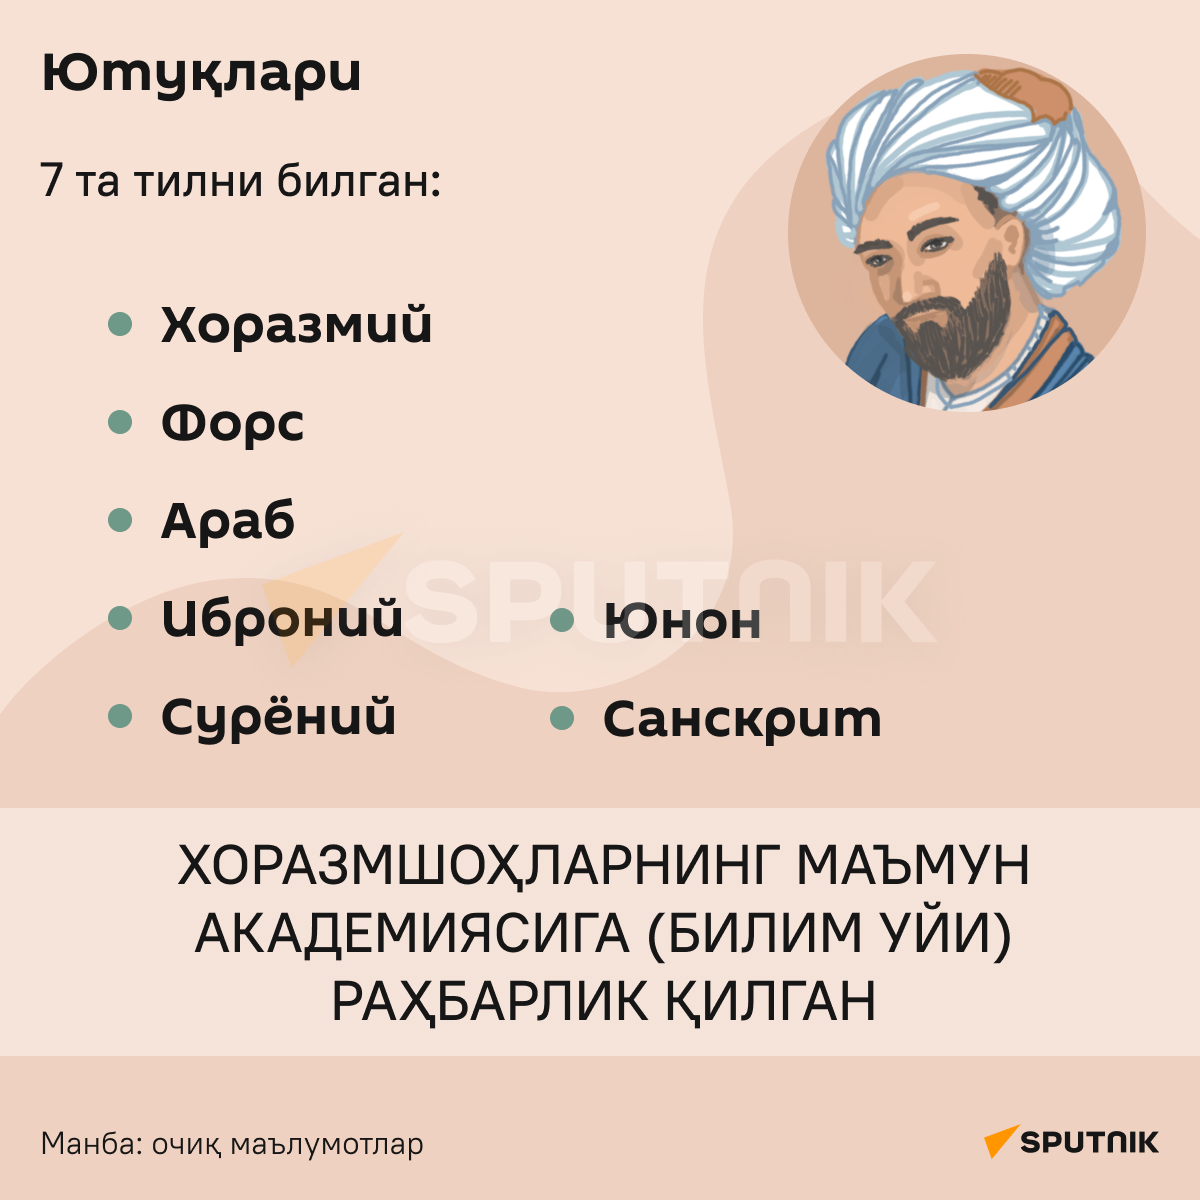 Abu Rayxon Beruniy infografika - Sputnik O‘zbekiston